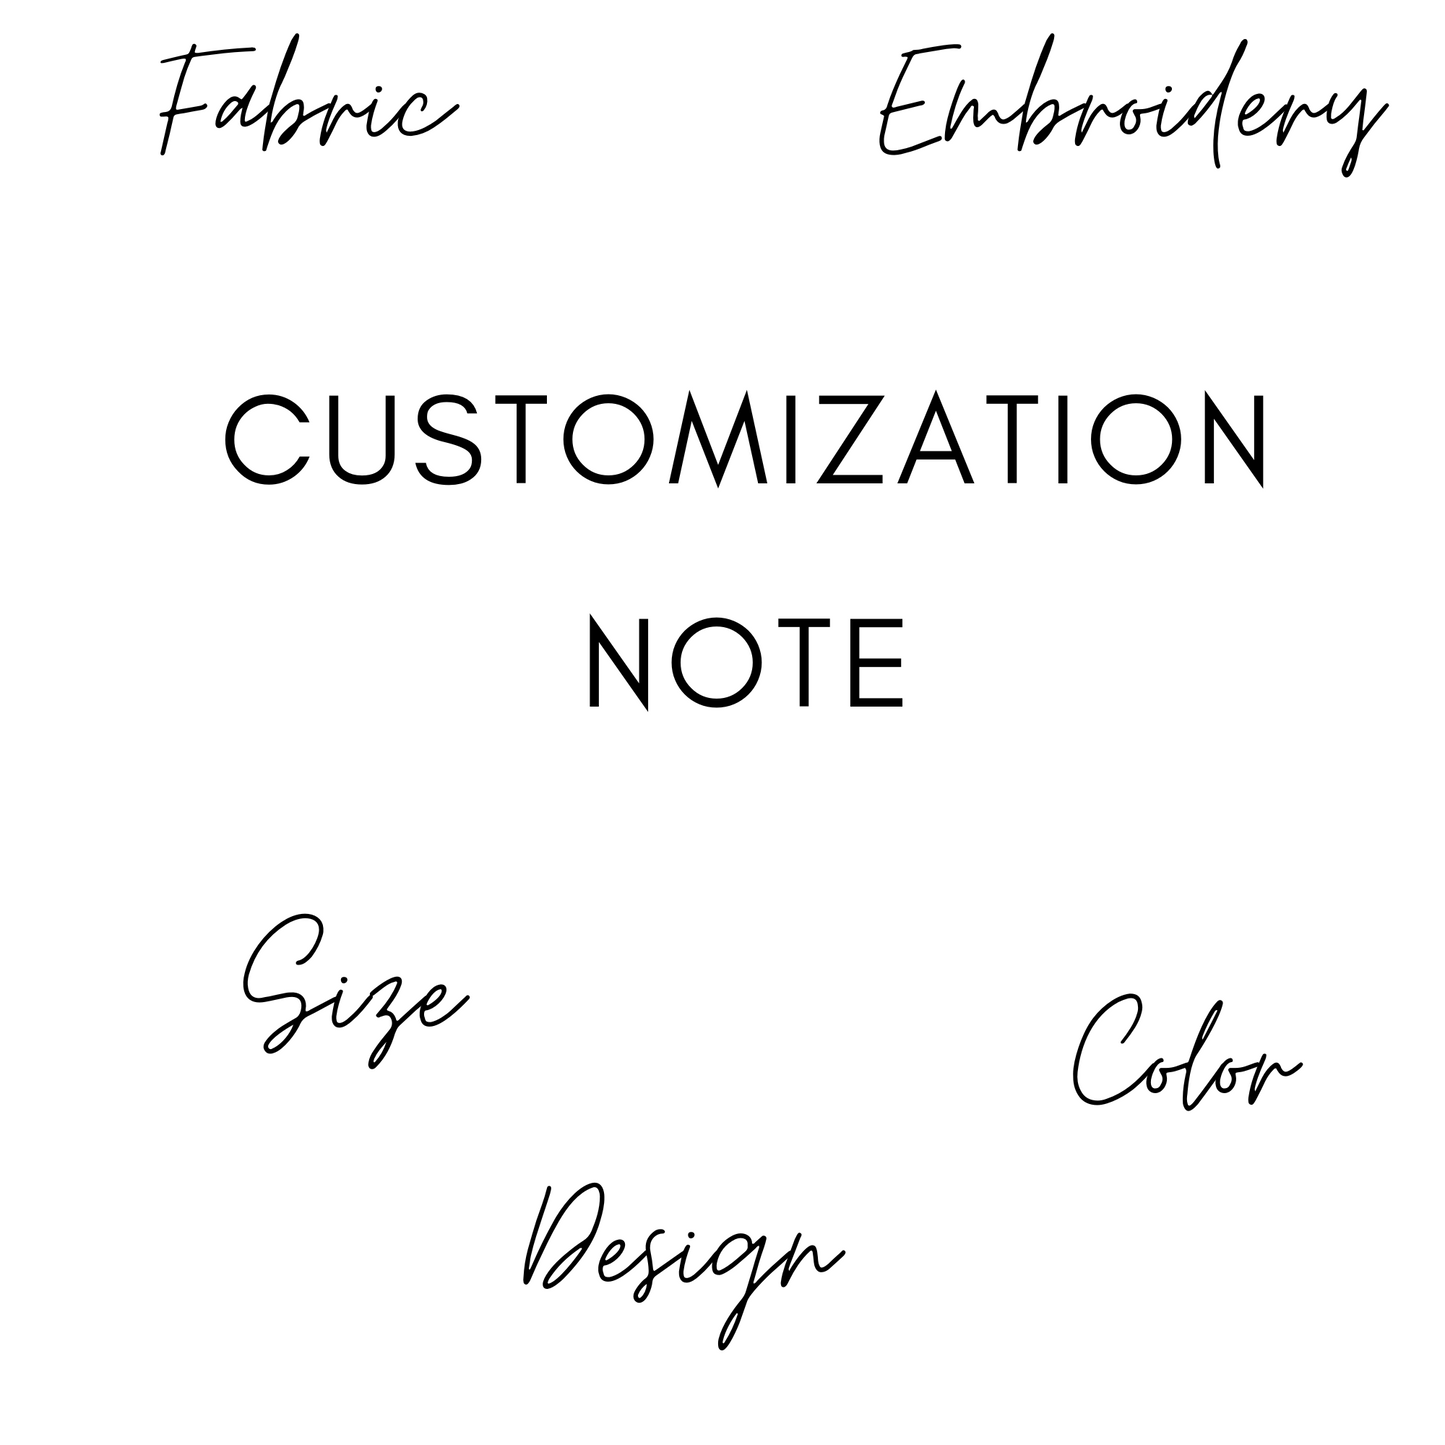 Customization Note